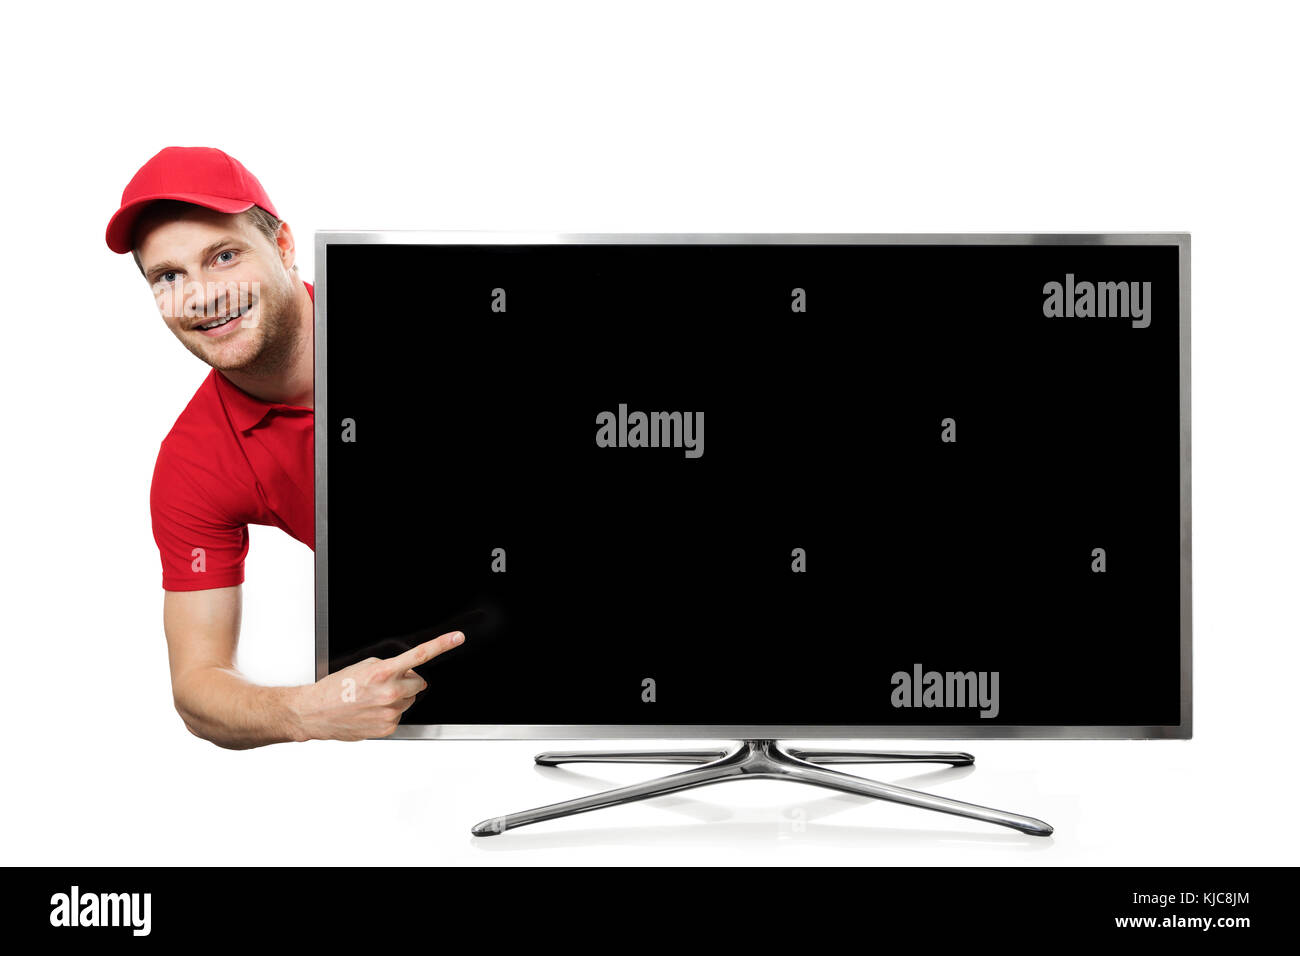 Jeune homme en uniforme rouge pointant sur l'écran de télévision vide Banque D'Images